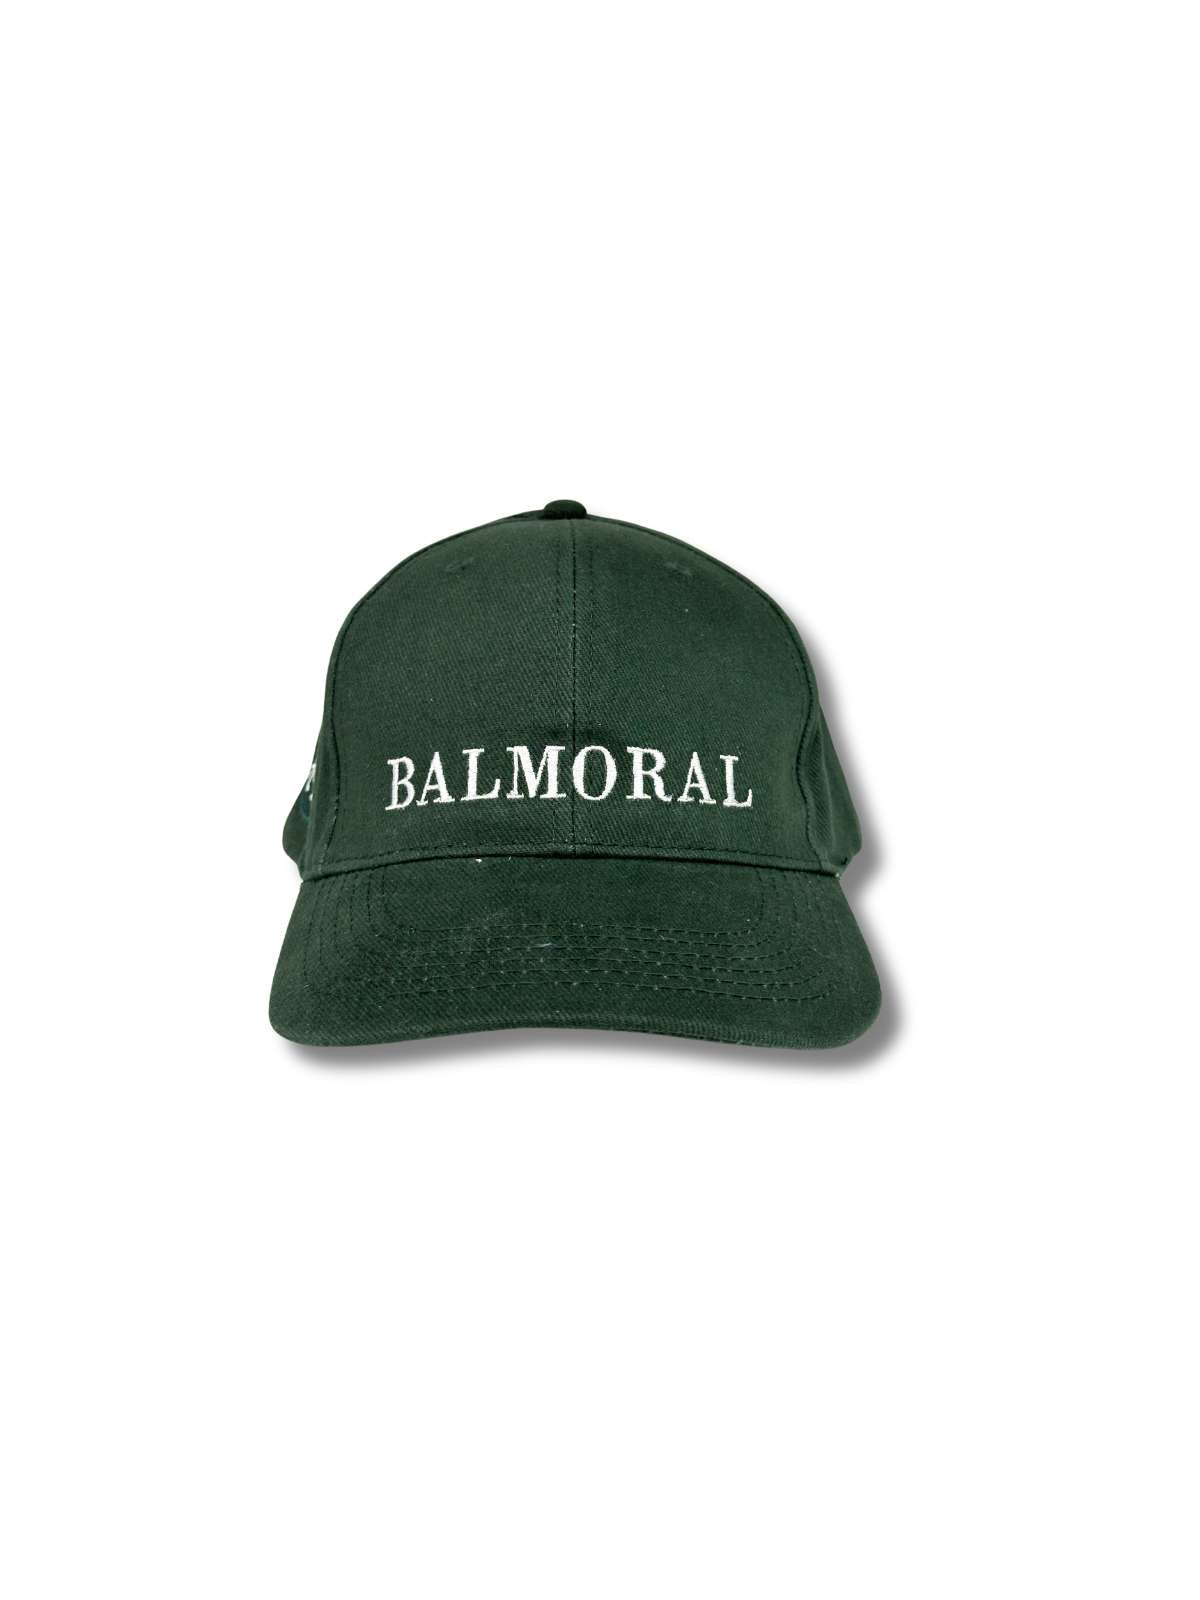 Balmoral Unisex Cotton Cap - Army